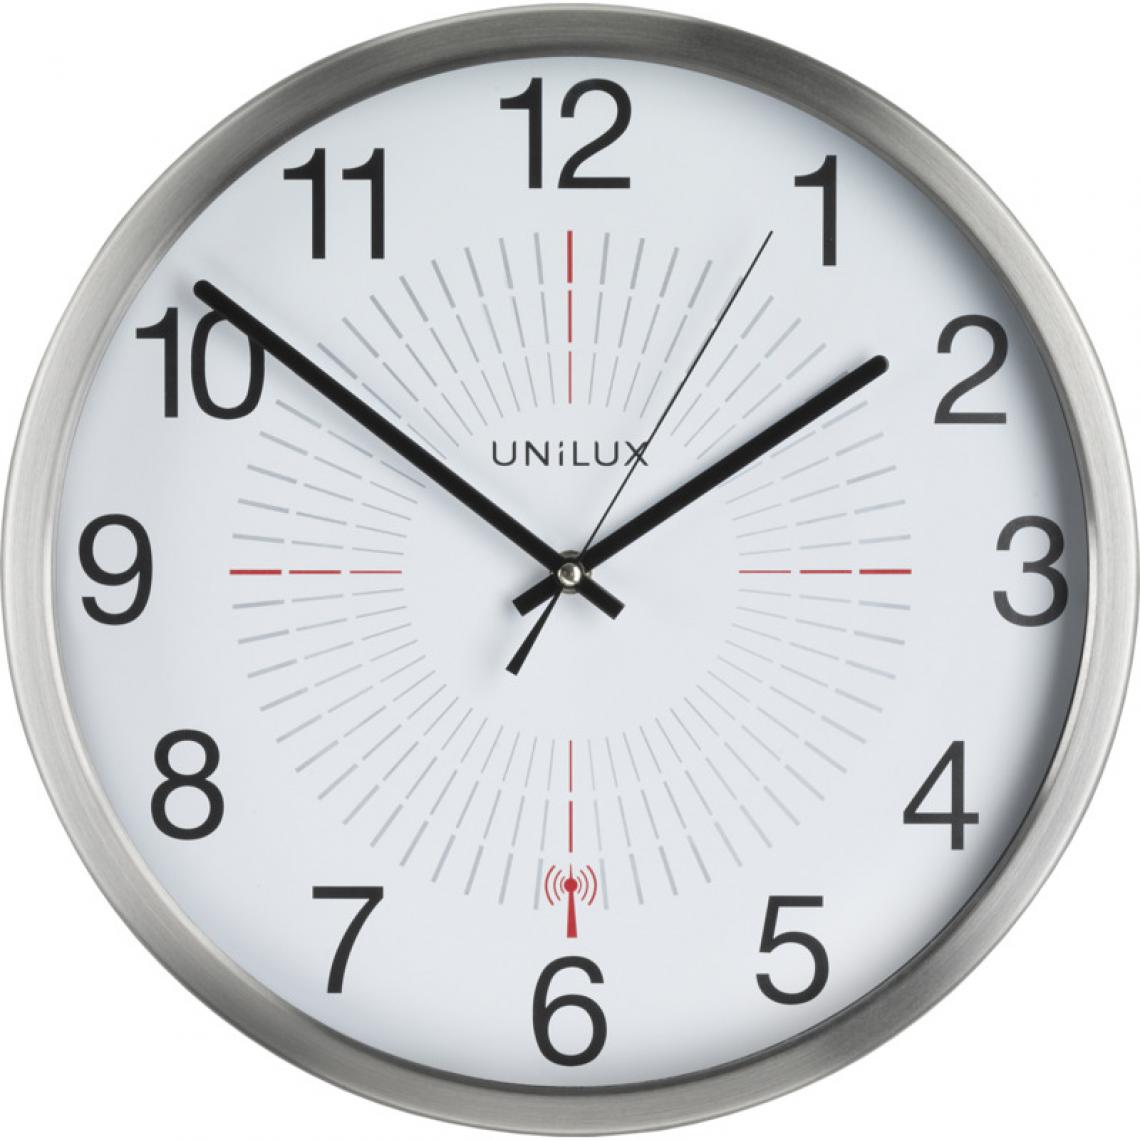 Unilux - UNiLUX Horloge murale radio-pilotée 'OUTDOOR', argent () - Télérupteurs, minuteries et horloges